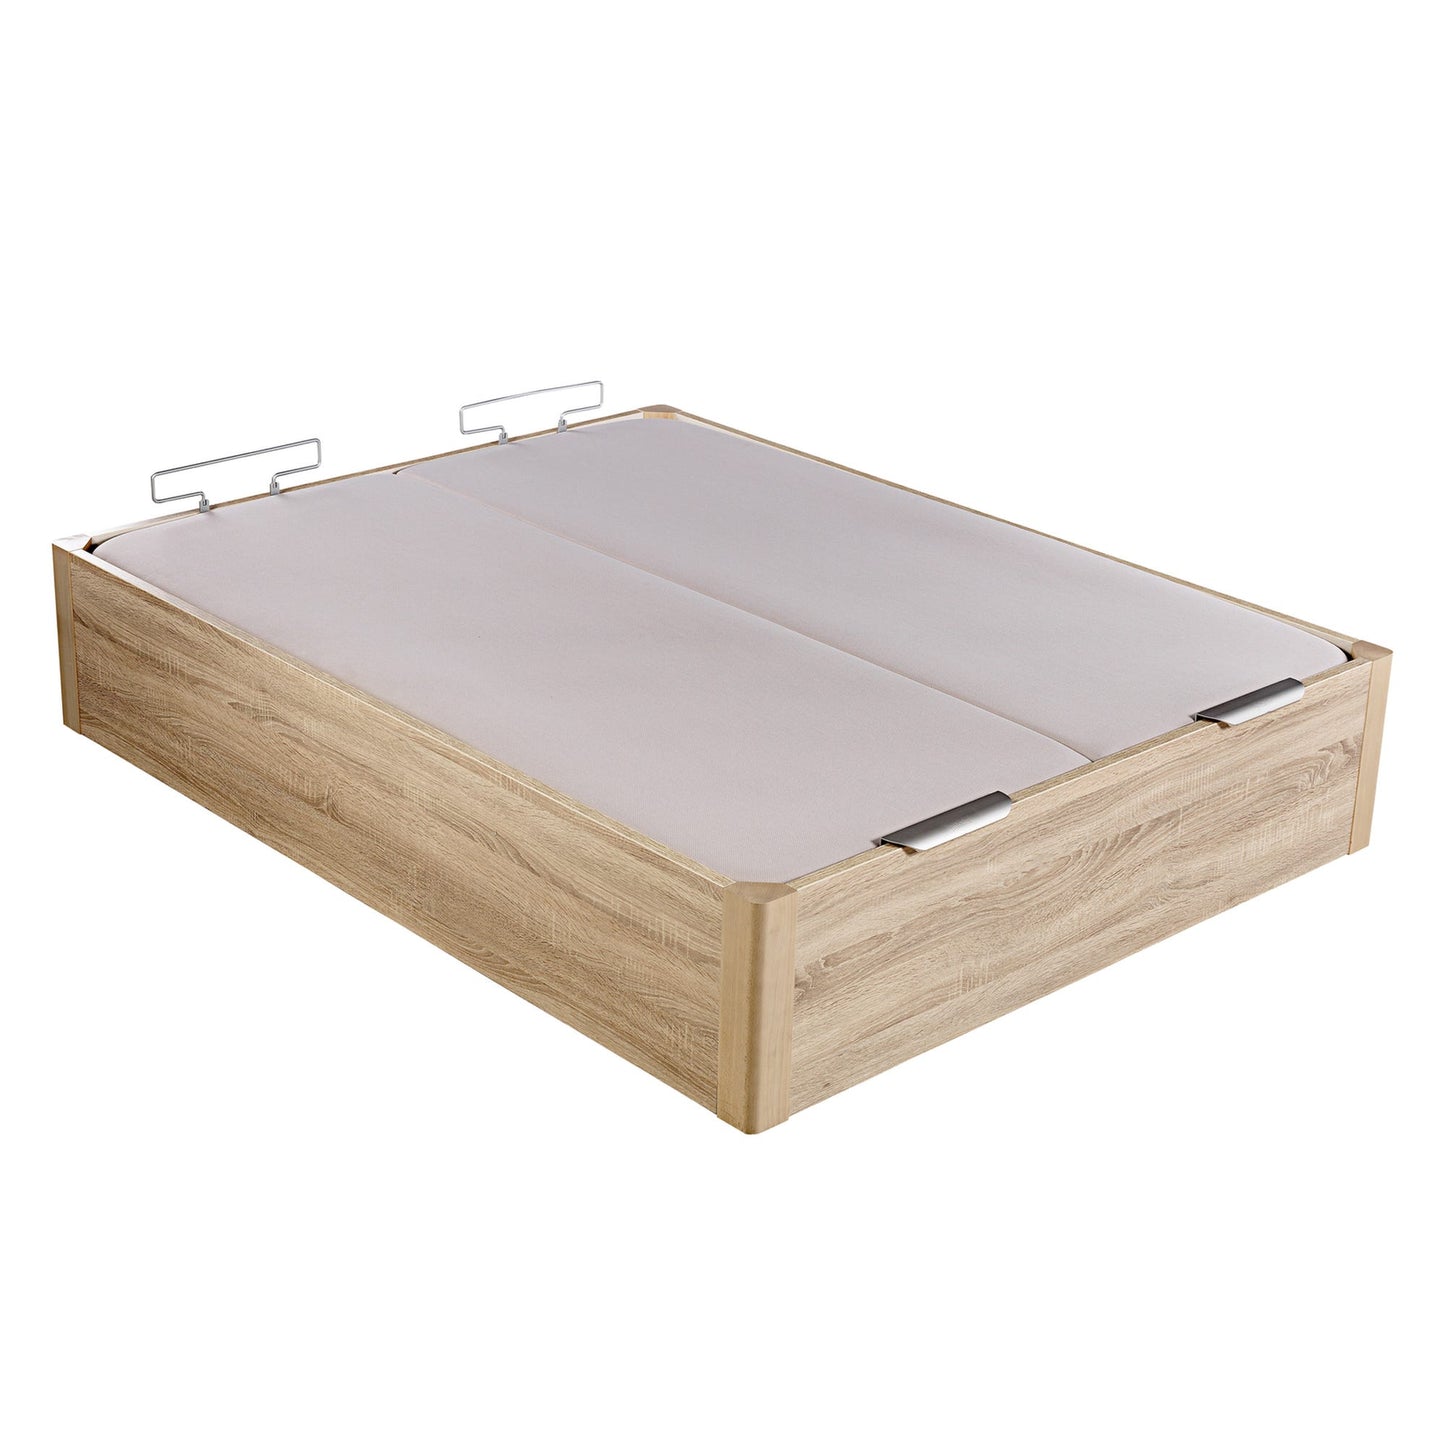 Canapé abatible de madera de alta capacidad tapa doble de color natural - DESIGN - 200x220